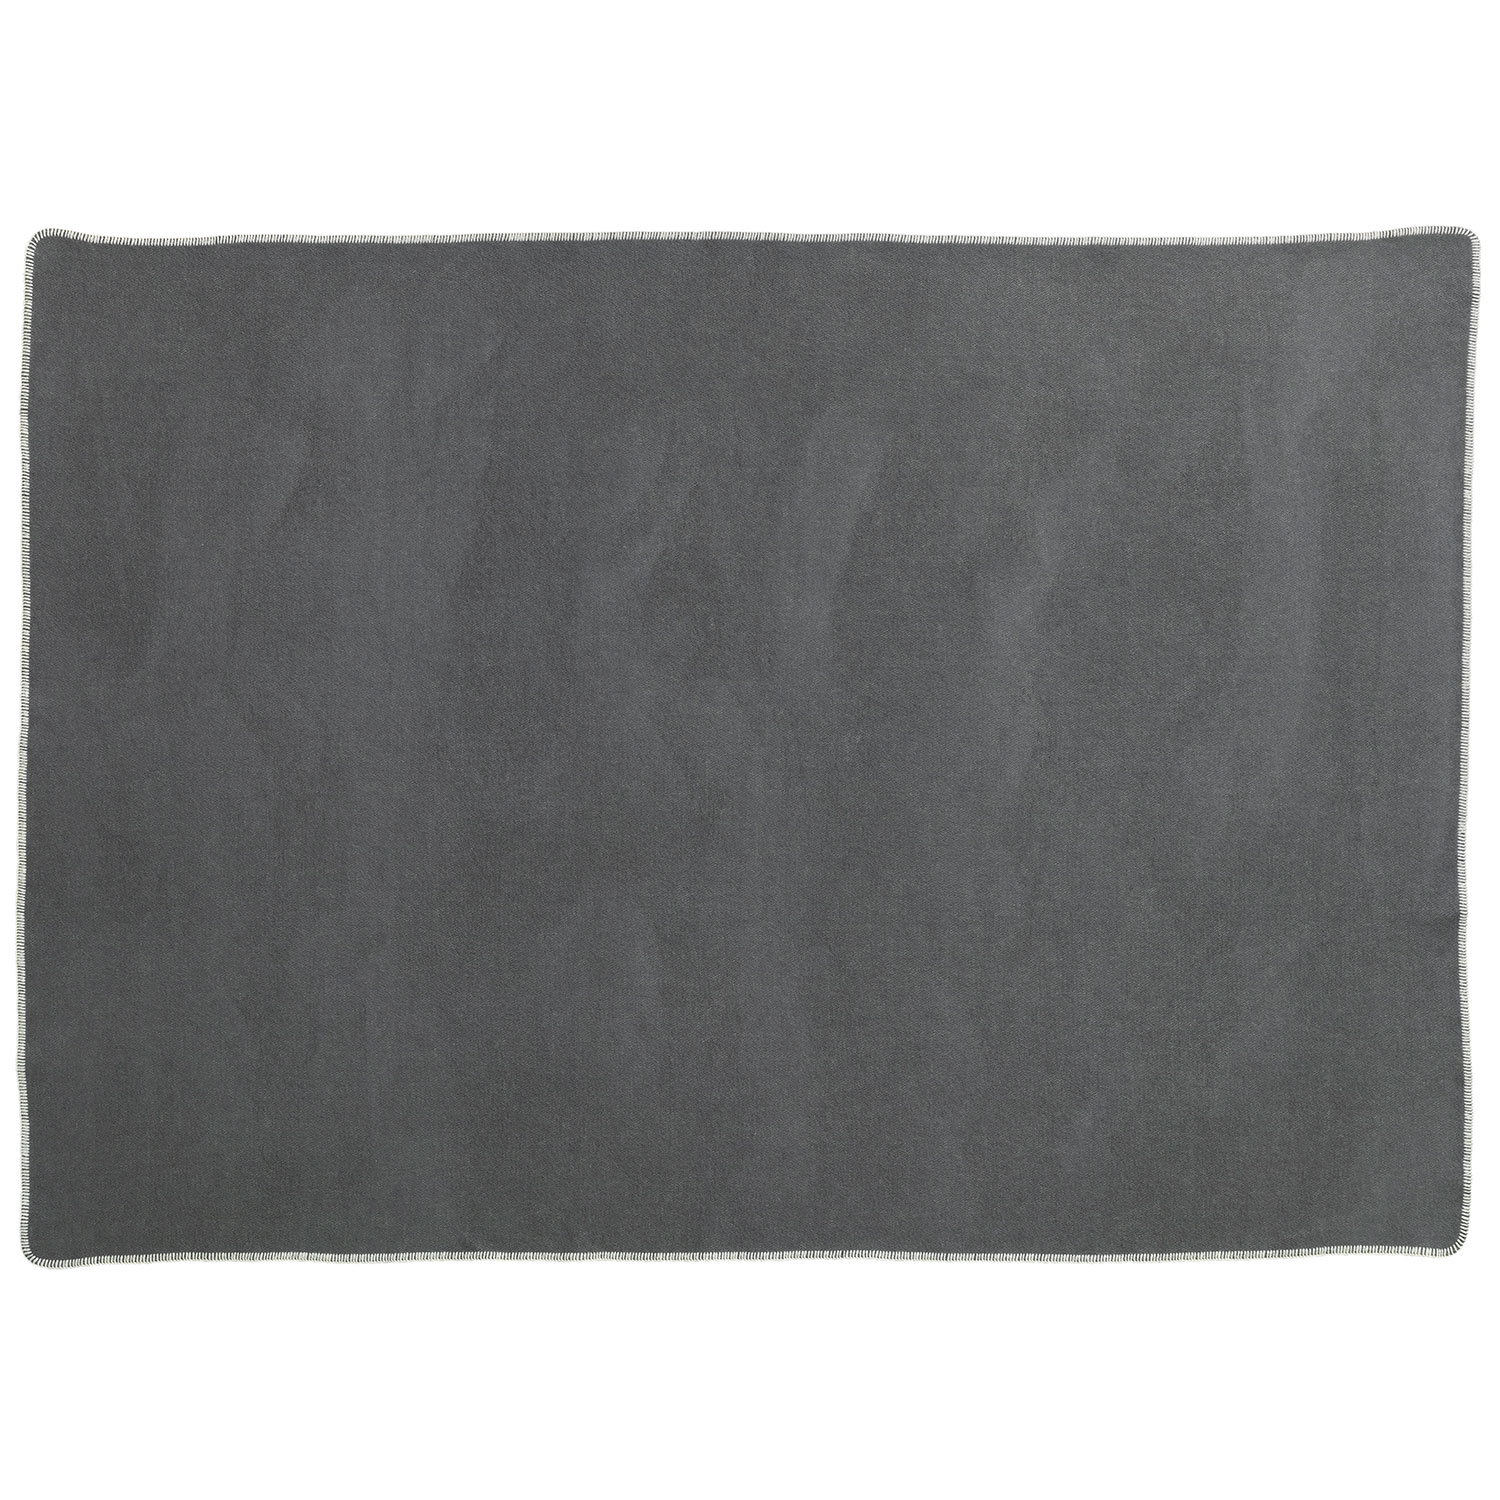 Pappelina Blanket matto 140×200 cm ylva dark grey / charcoal